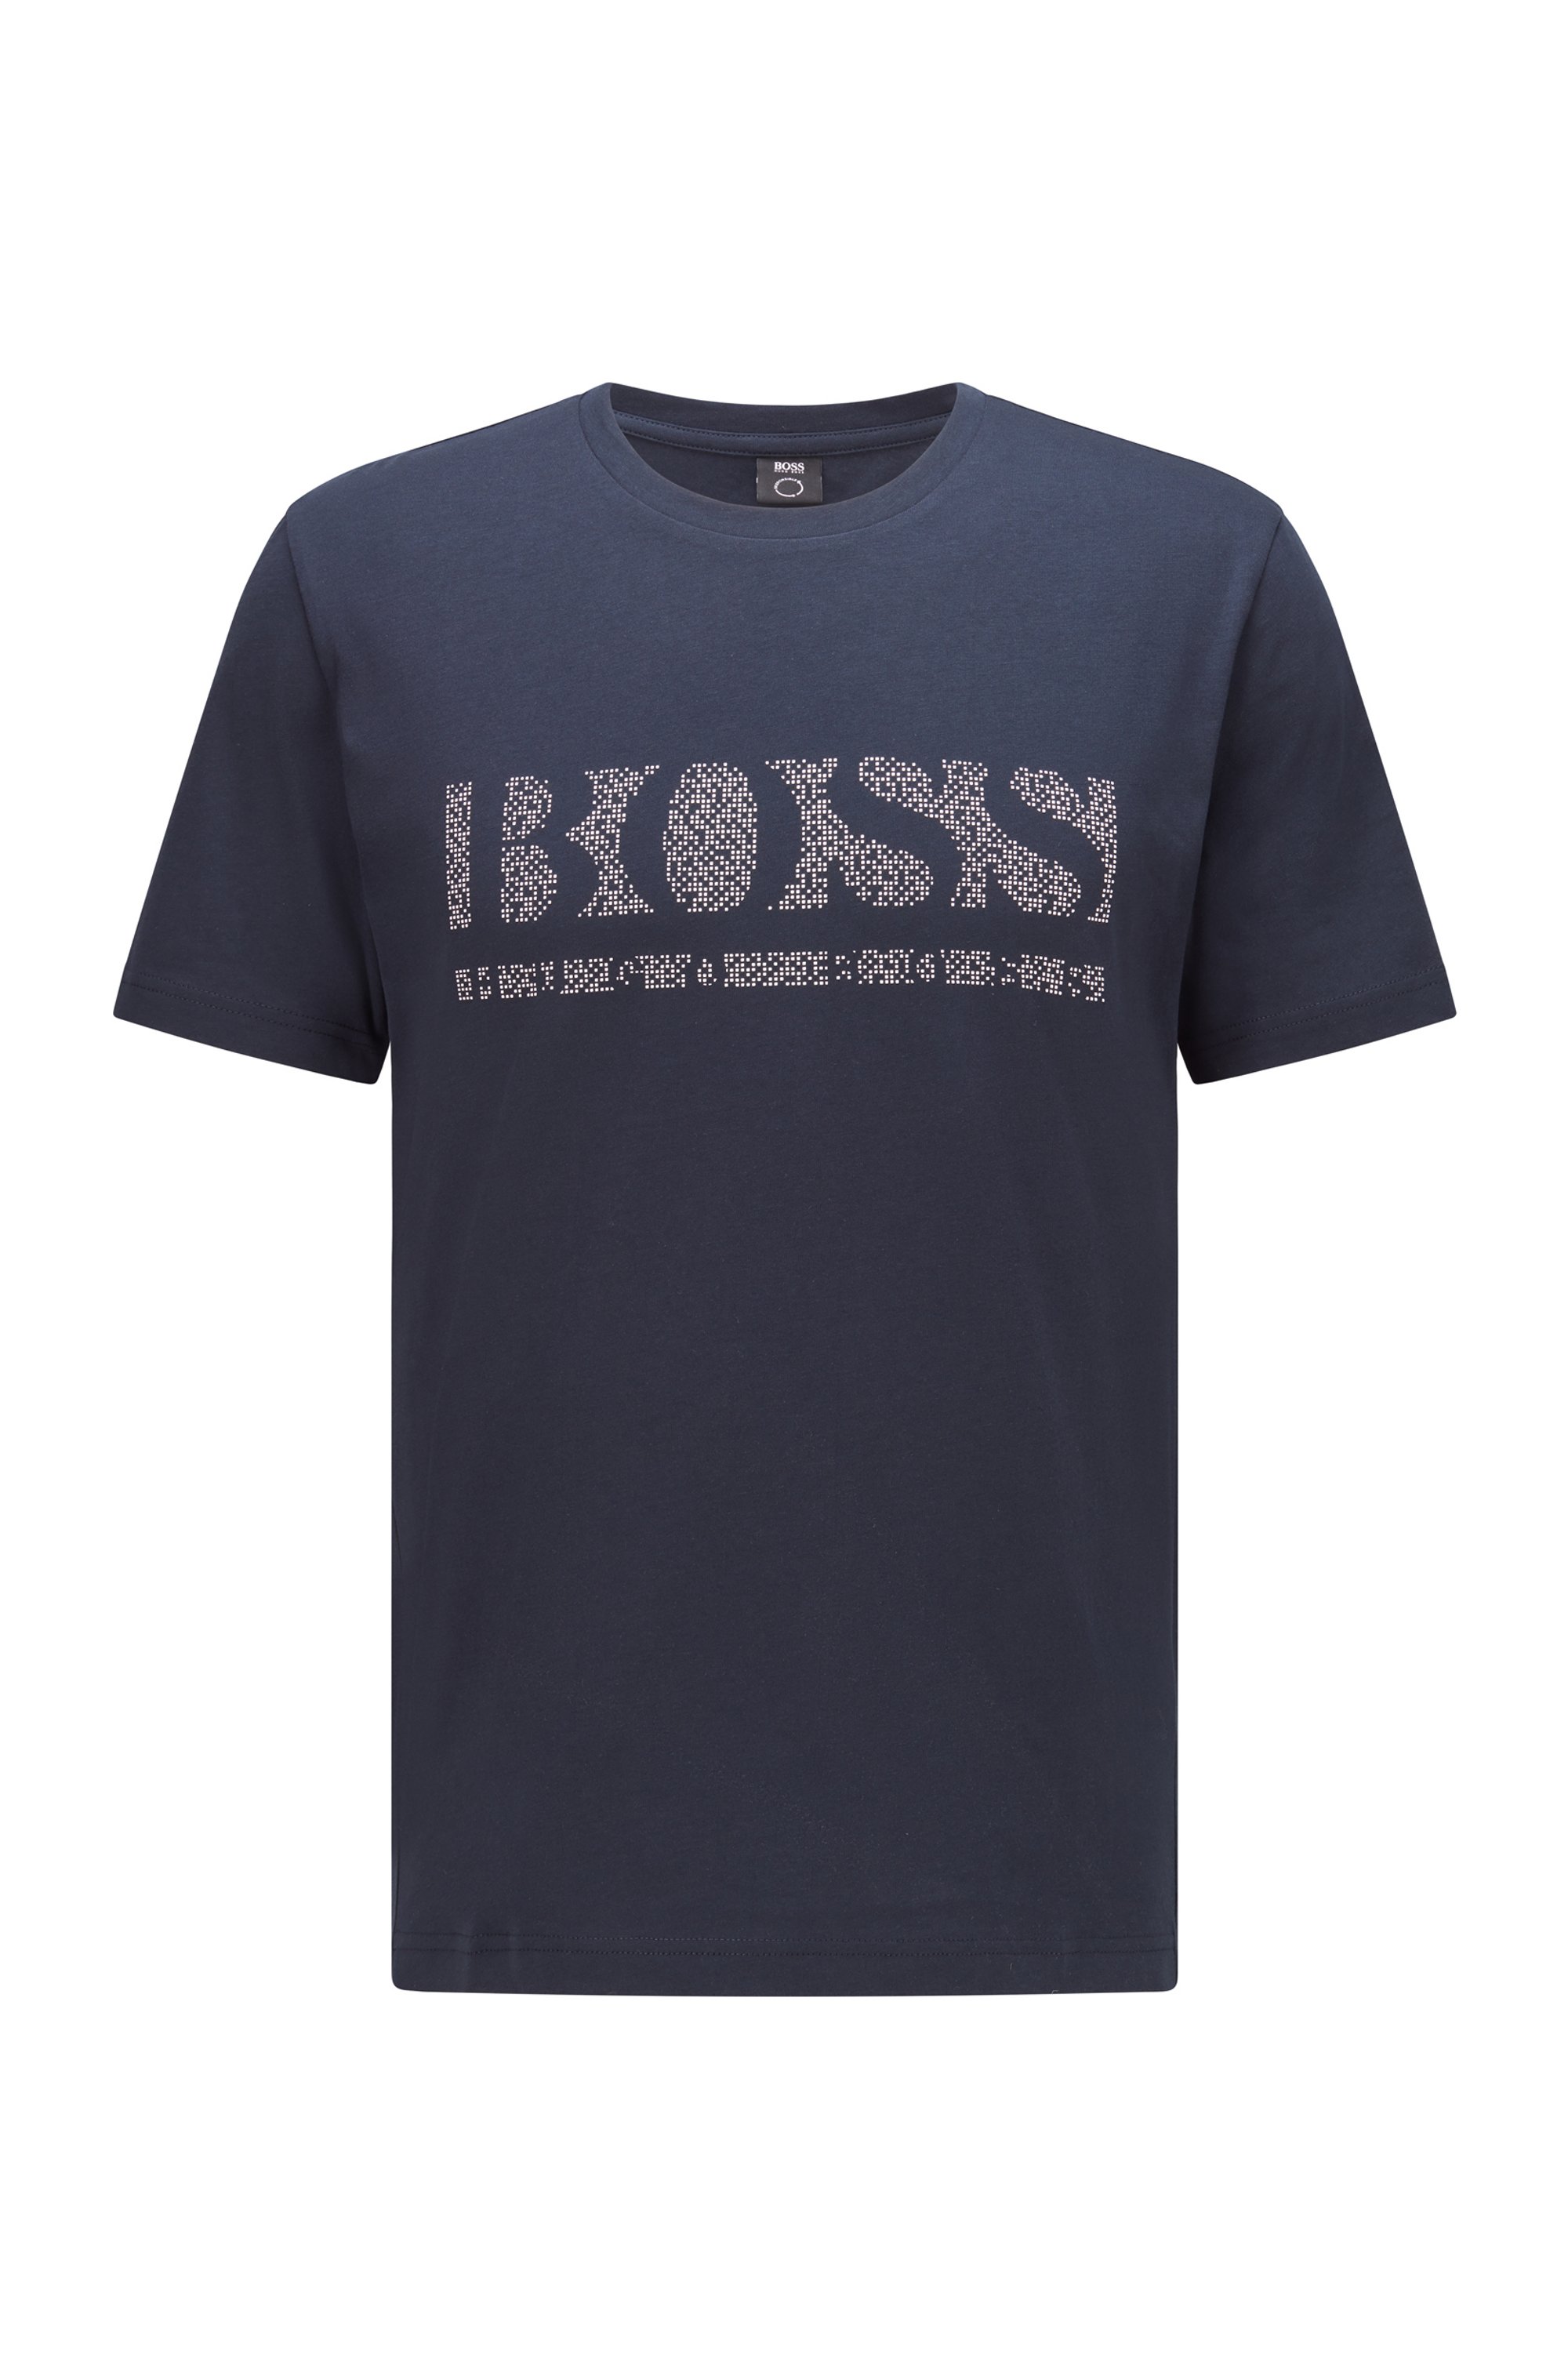 T-shirt en coton à imprimé logo pixelisé, Bleu foncé